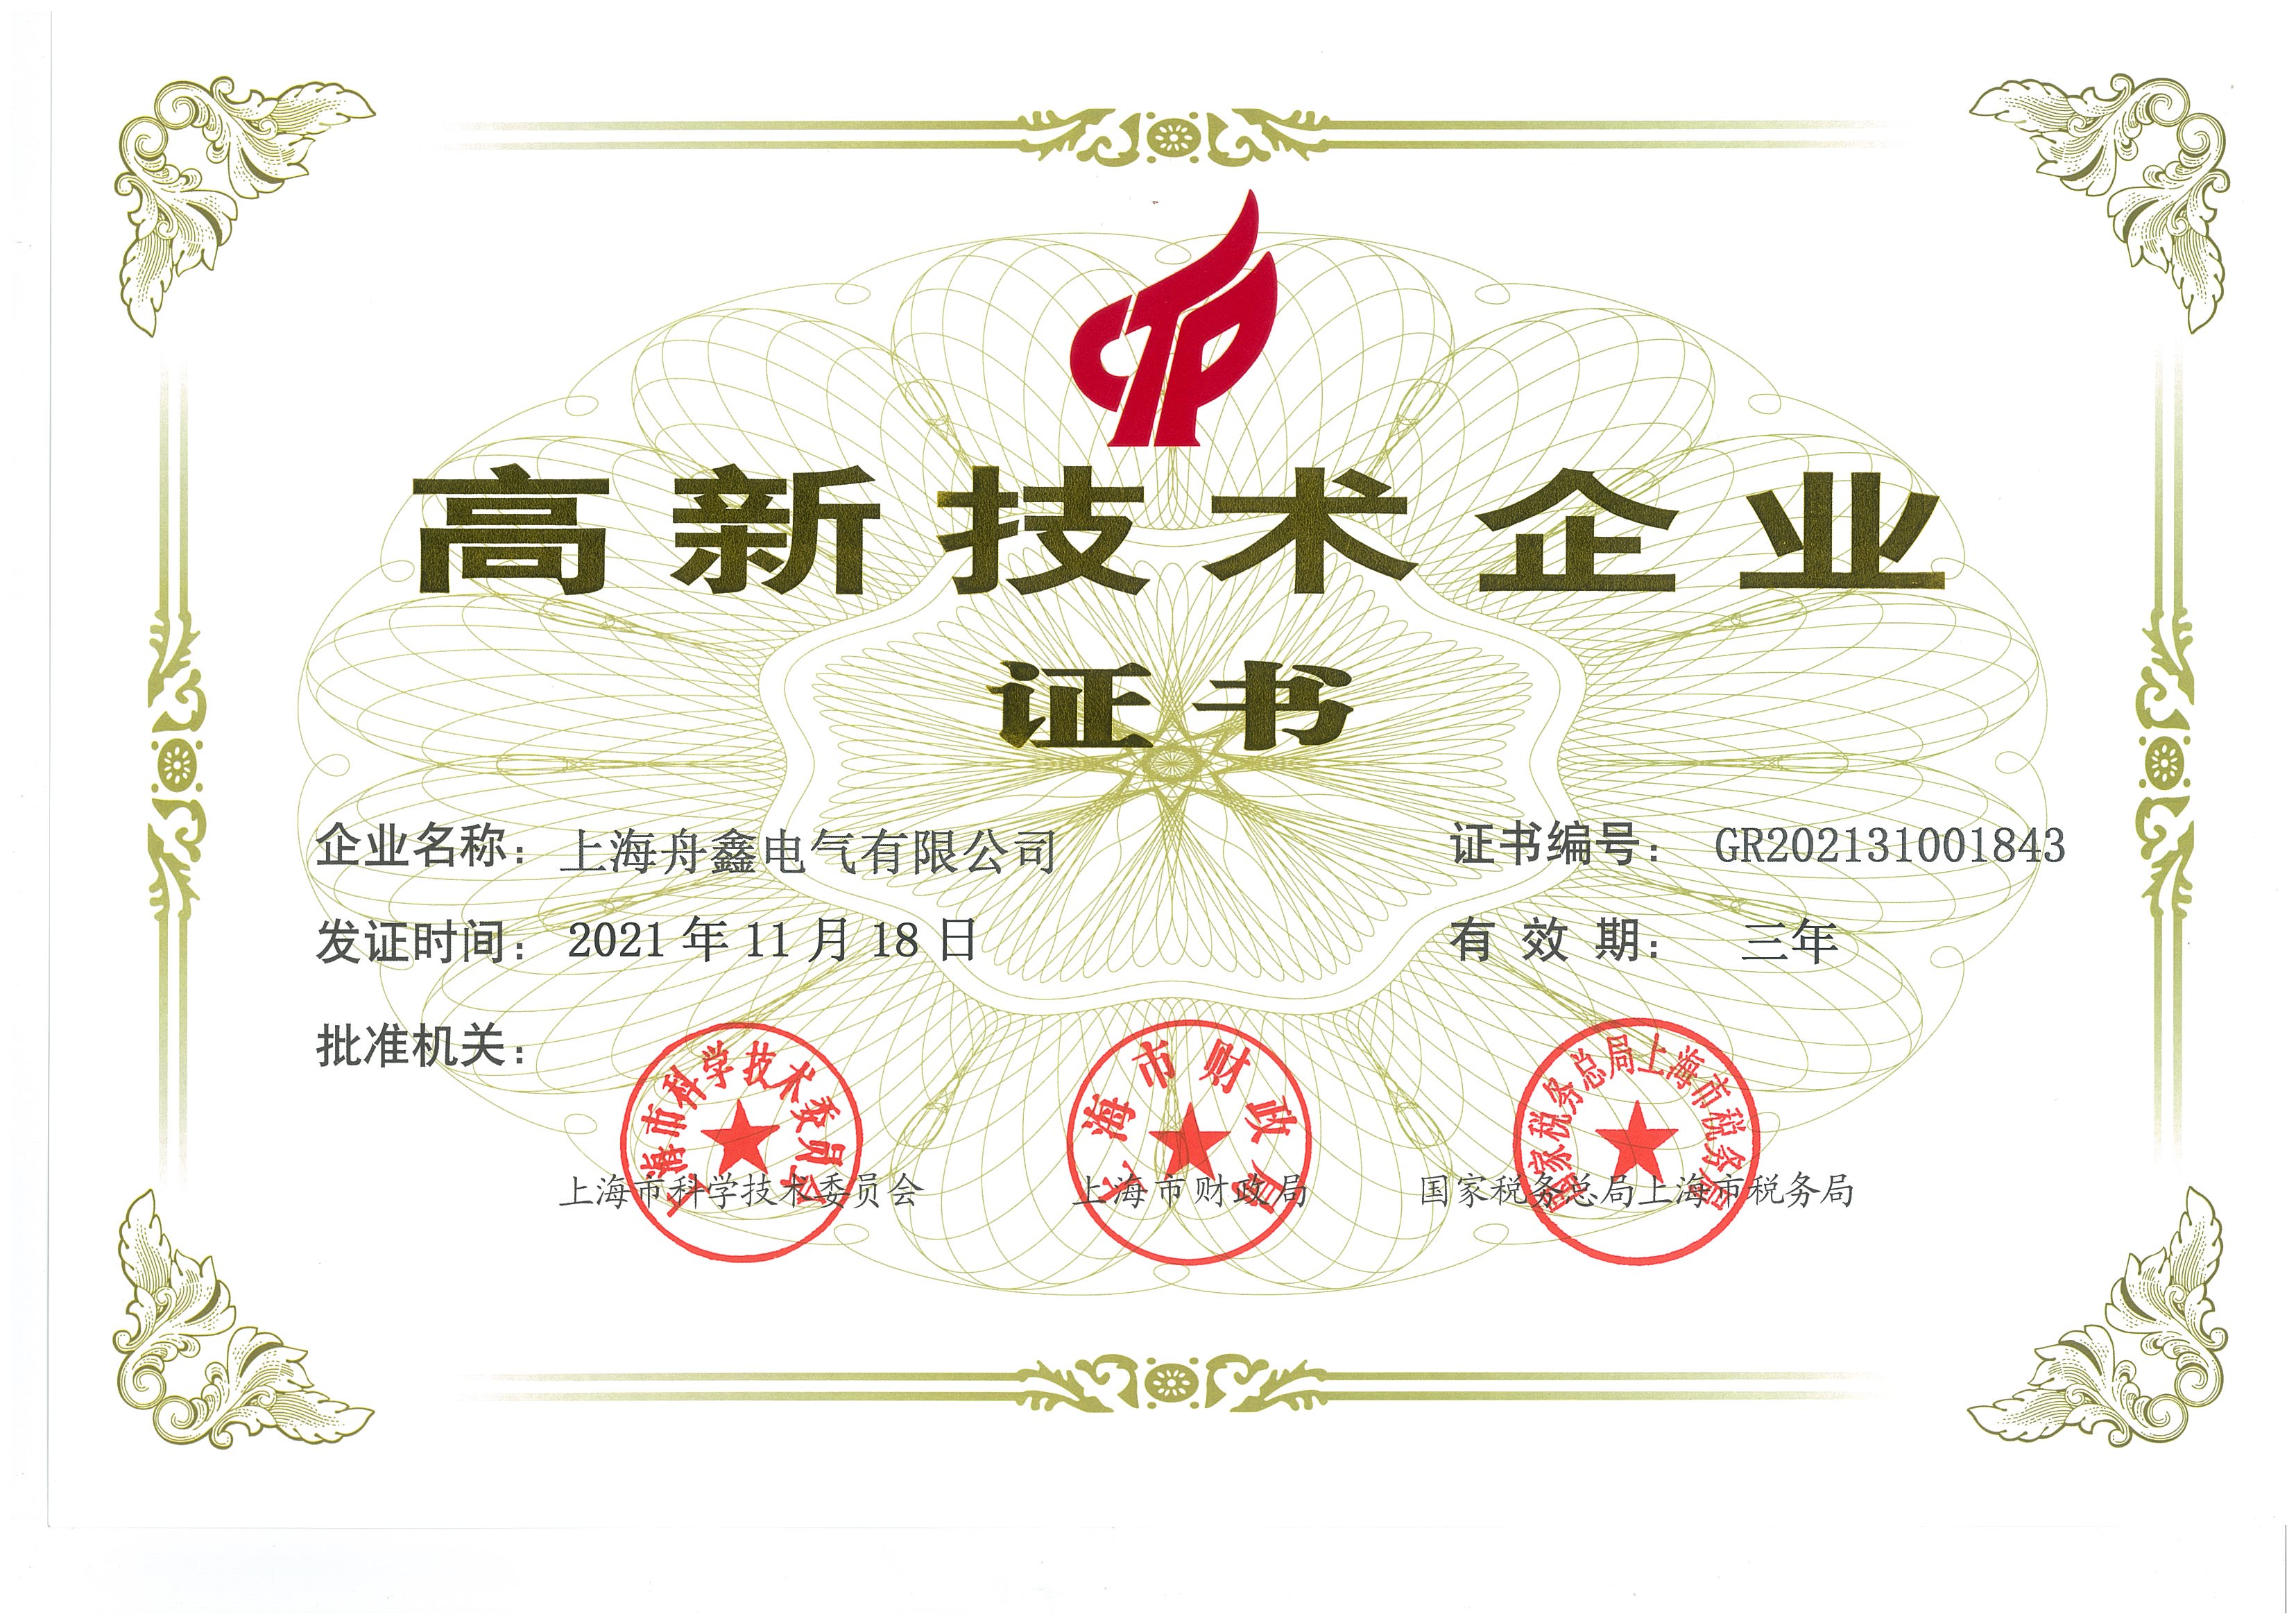 上海舟鑫电气有限公司荣获上海市高新技术企业荣誉